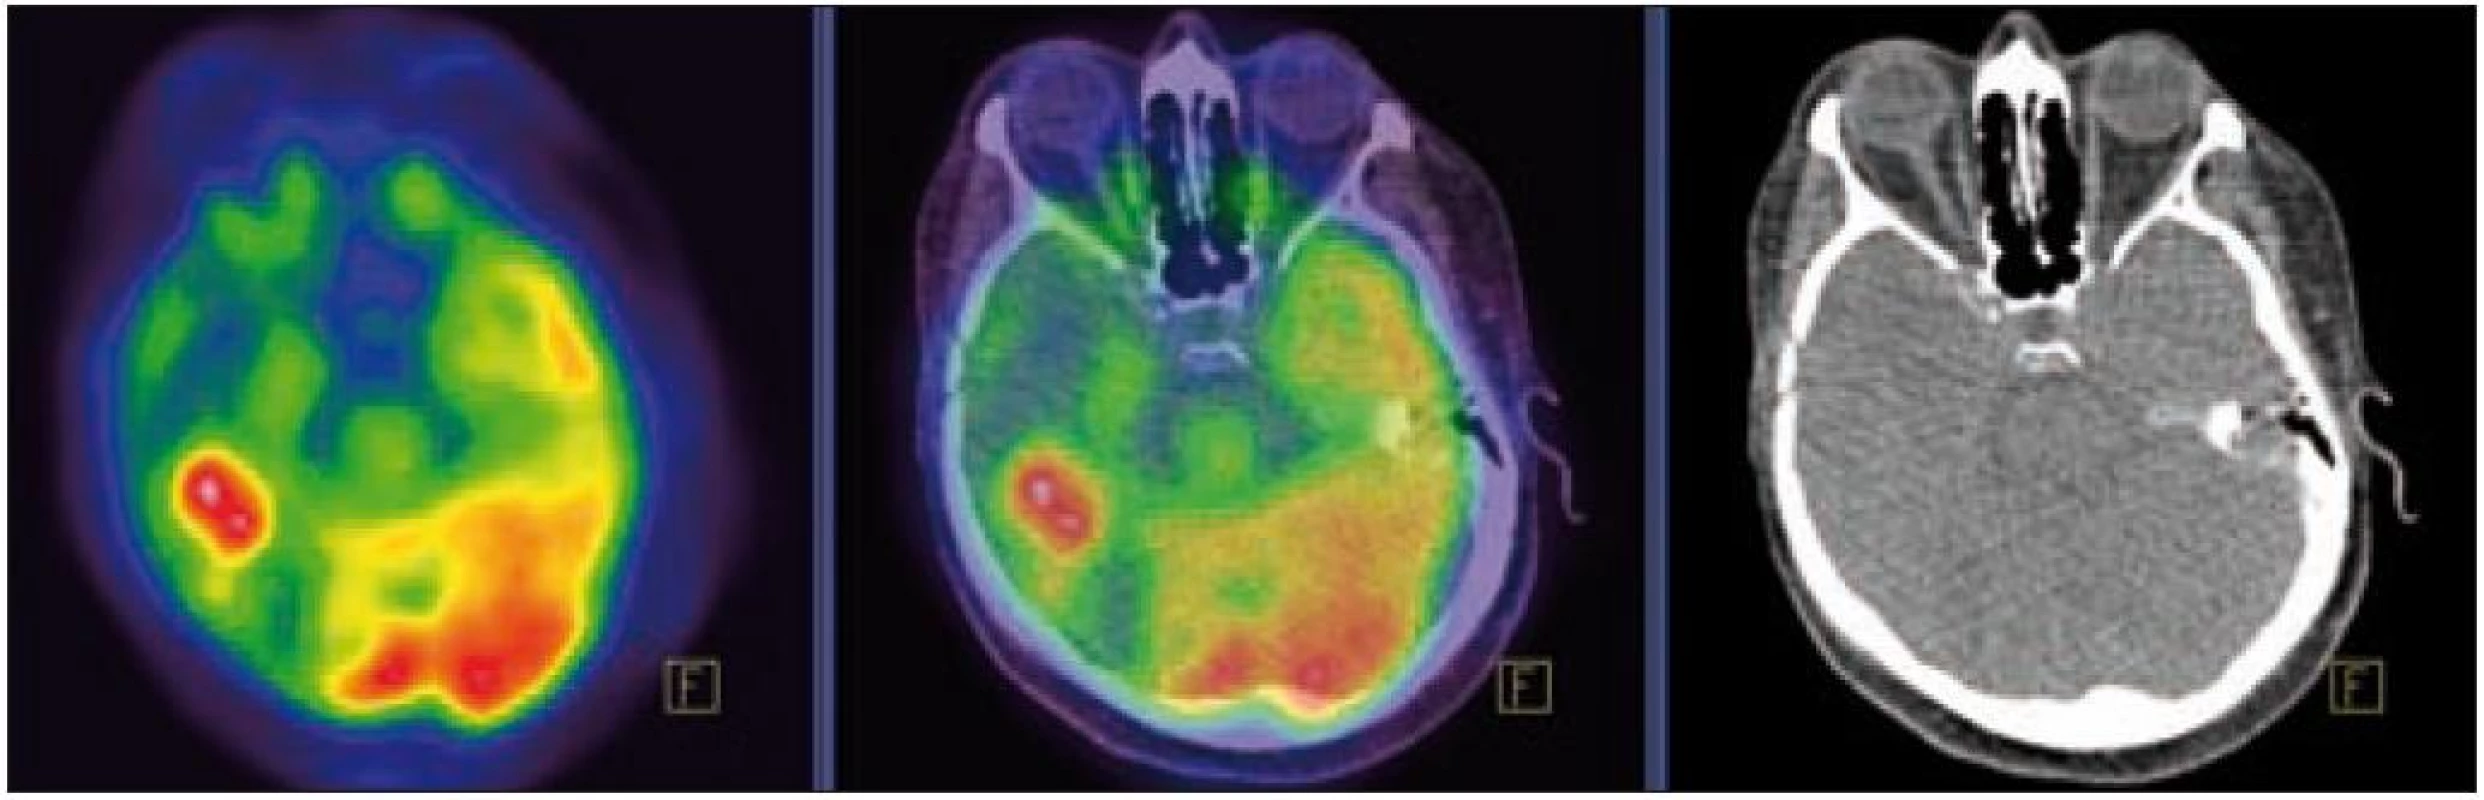 PET – Low-dose CT mozku. Ložisko vyšší akumulace FDG temporálně vpravo, SUV&lt;sub&gt;max&lt;/sub&gt; 12,53. Relativně nižší akumulace radiofarmaka v okolní kůře temporálního laloku vpravo.